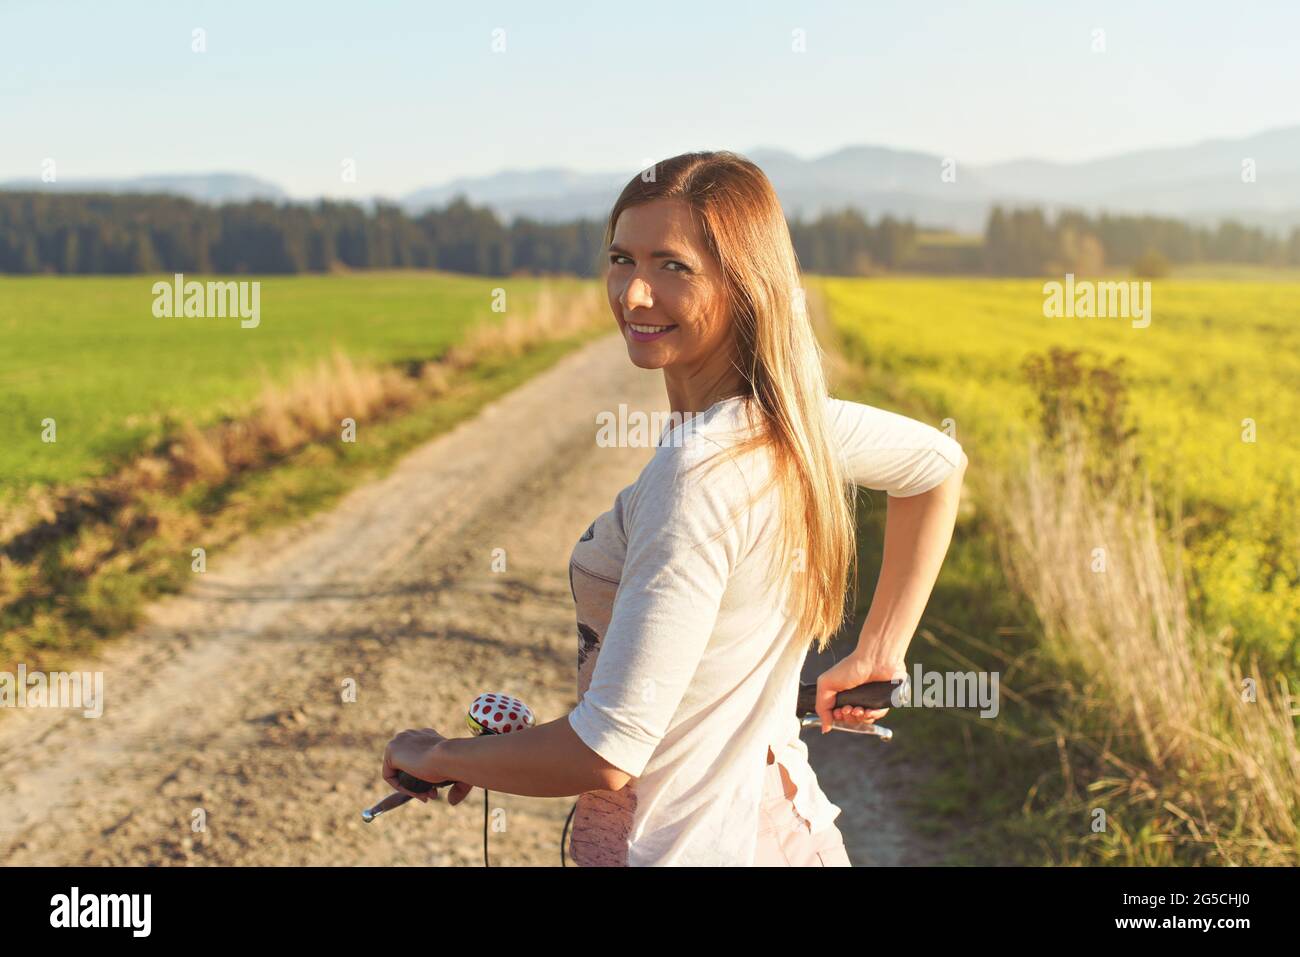 Junge Frau, die neben ihrem Fahrrad auf einer staubigen Landstraße steht und über die Schulter zurückblickt Stockfoto